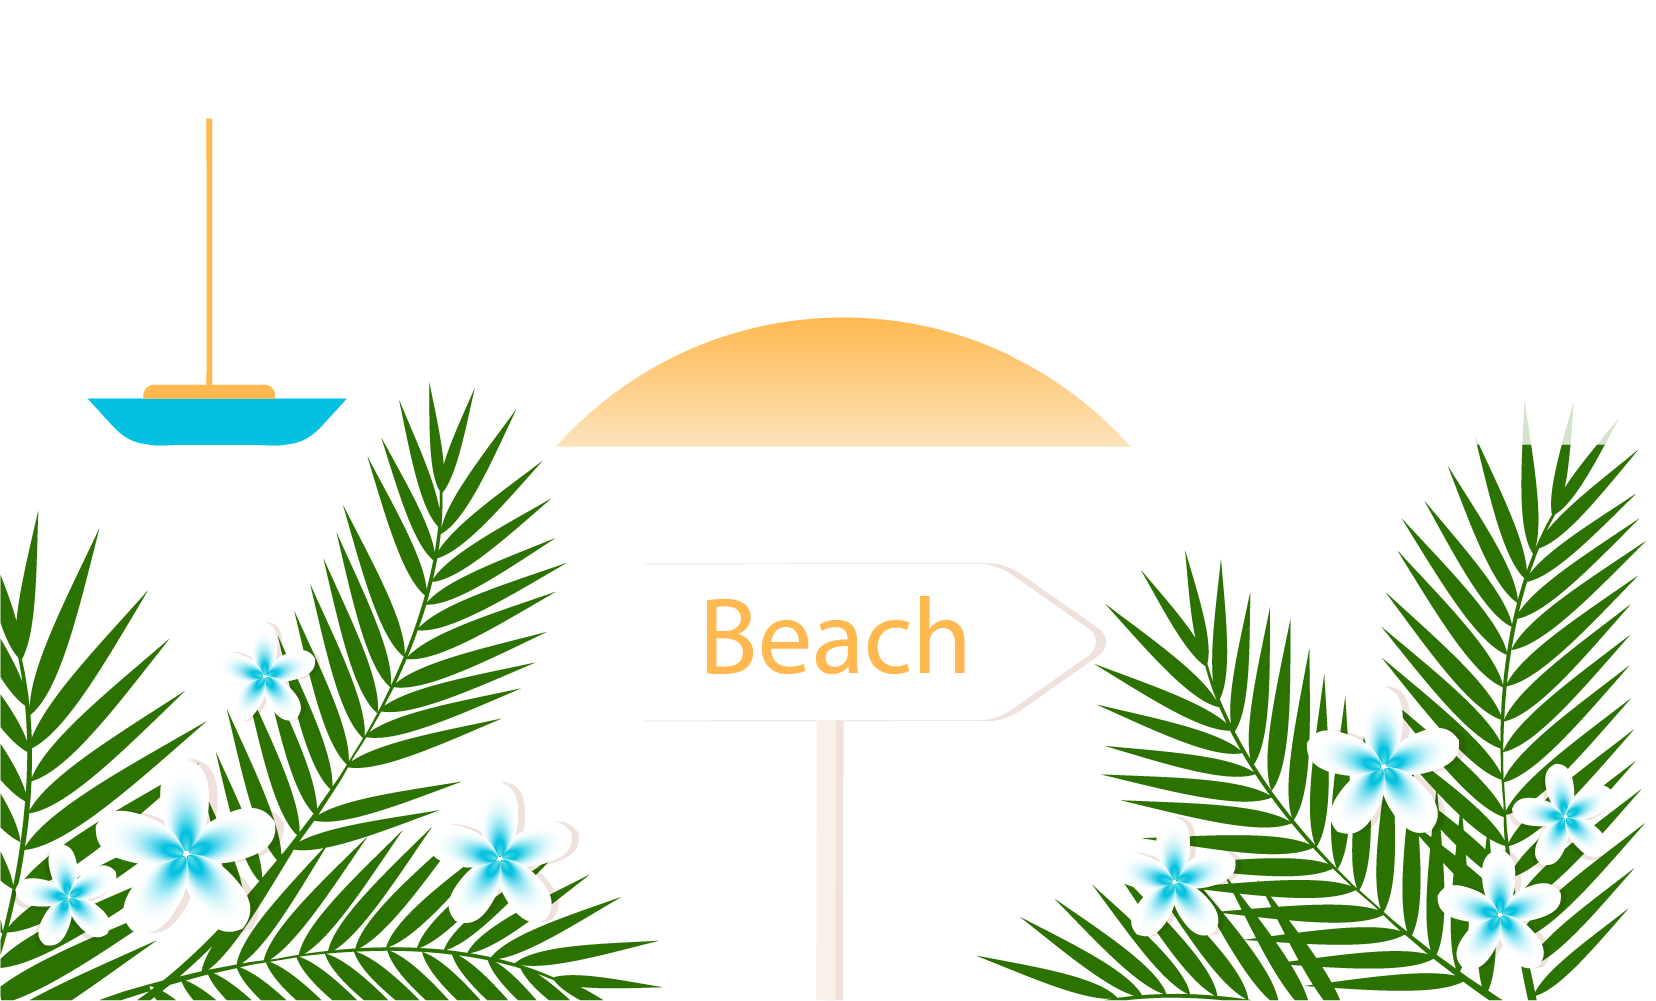 Beach Summer Vacation - Playa De La Arena (1656x1001)